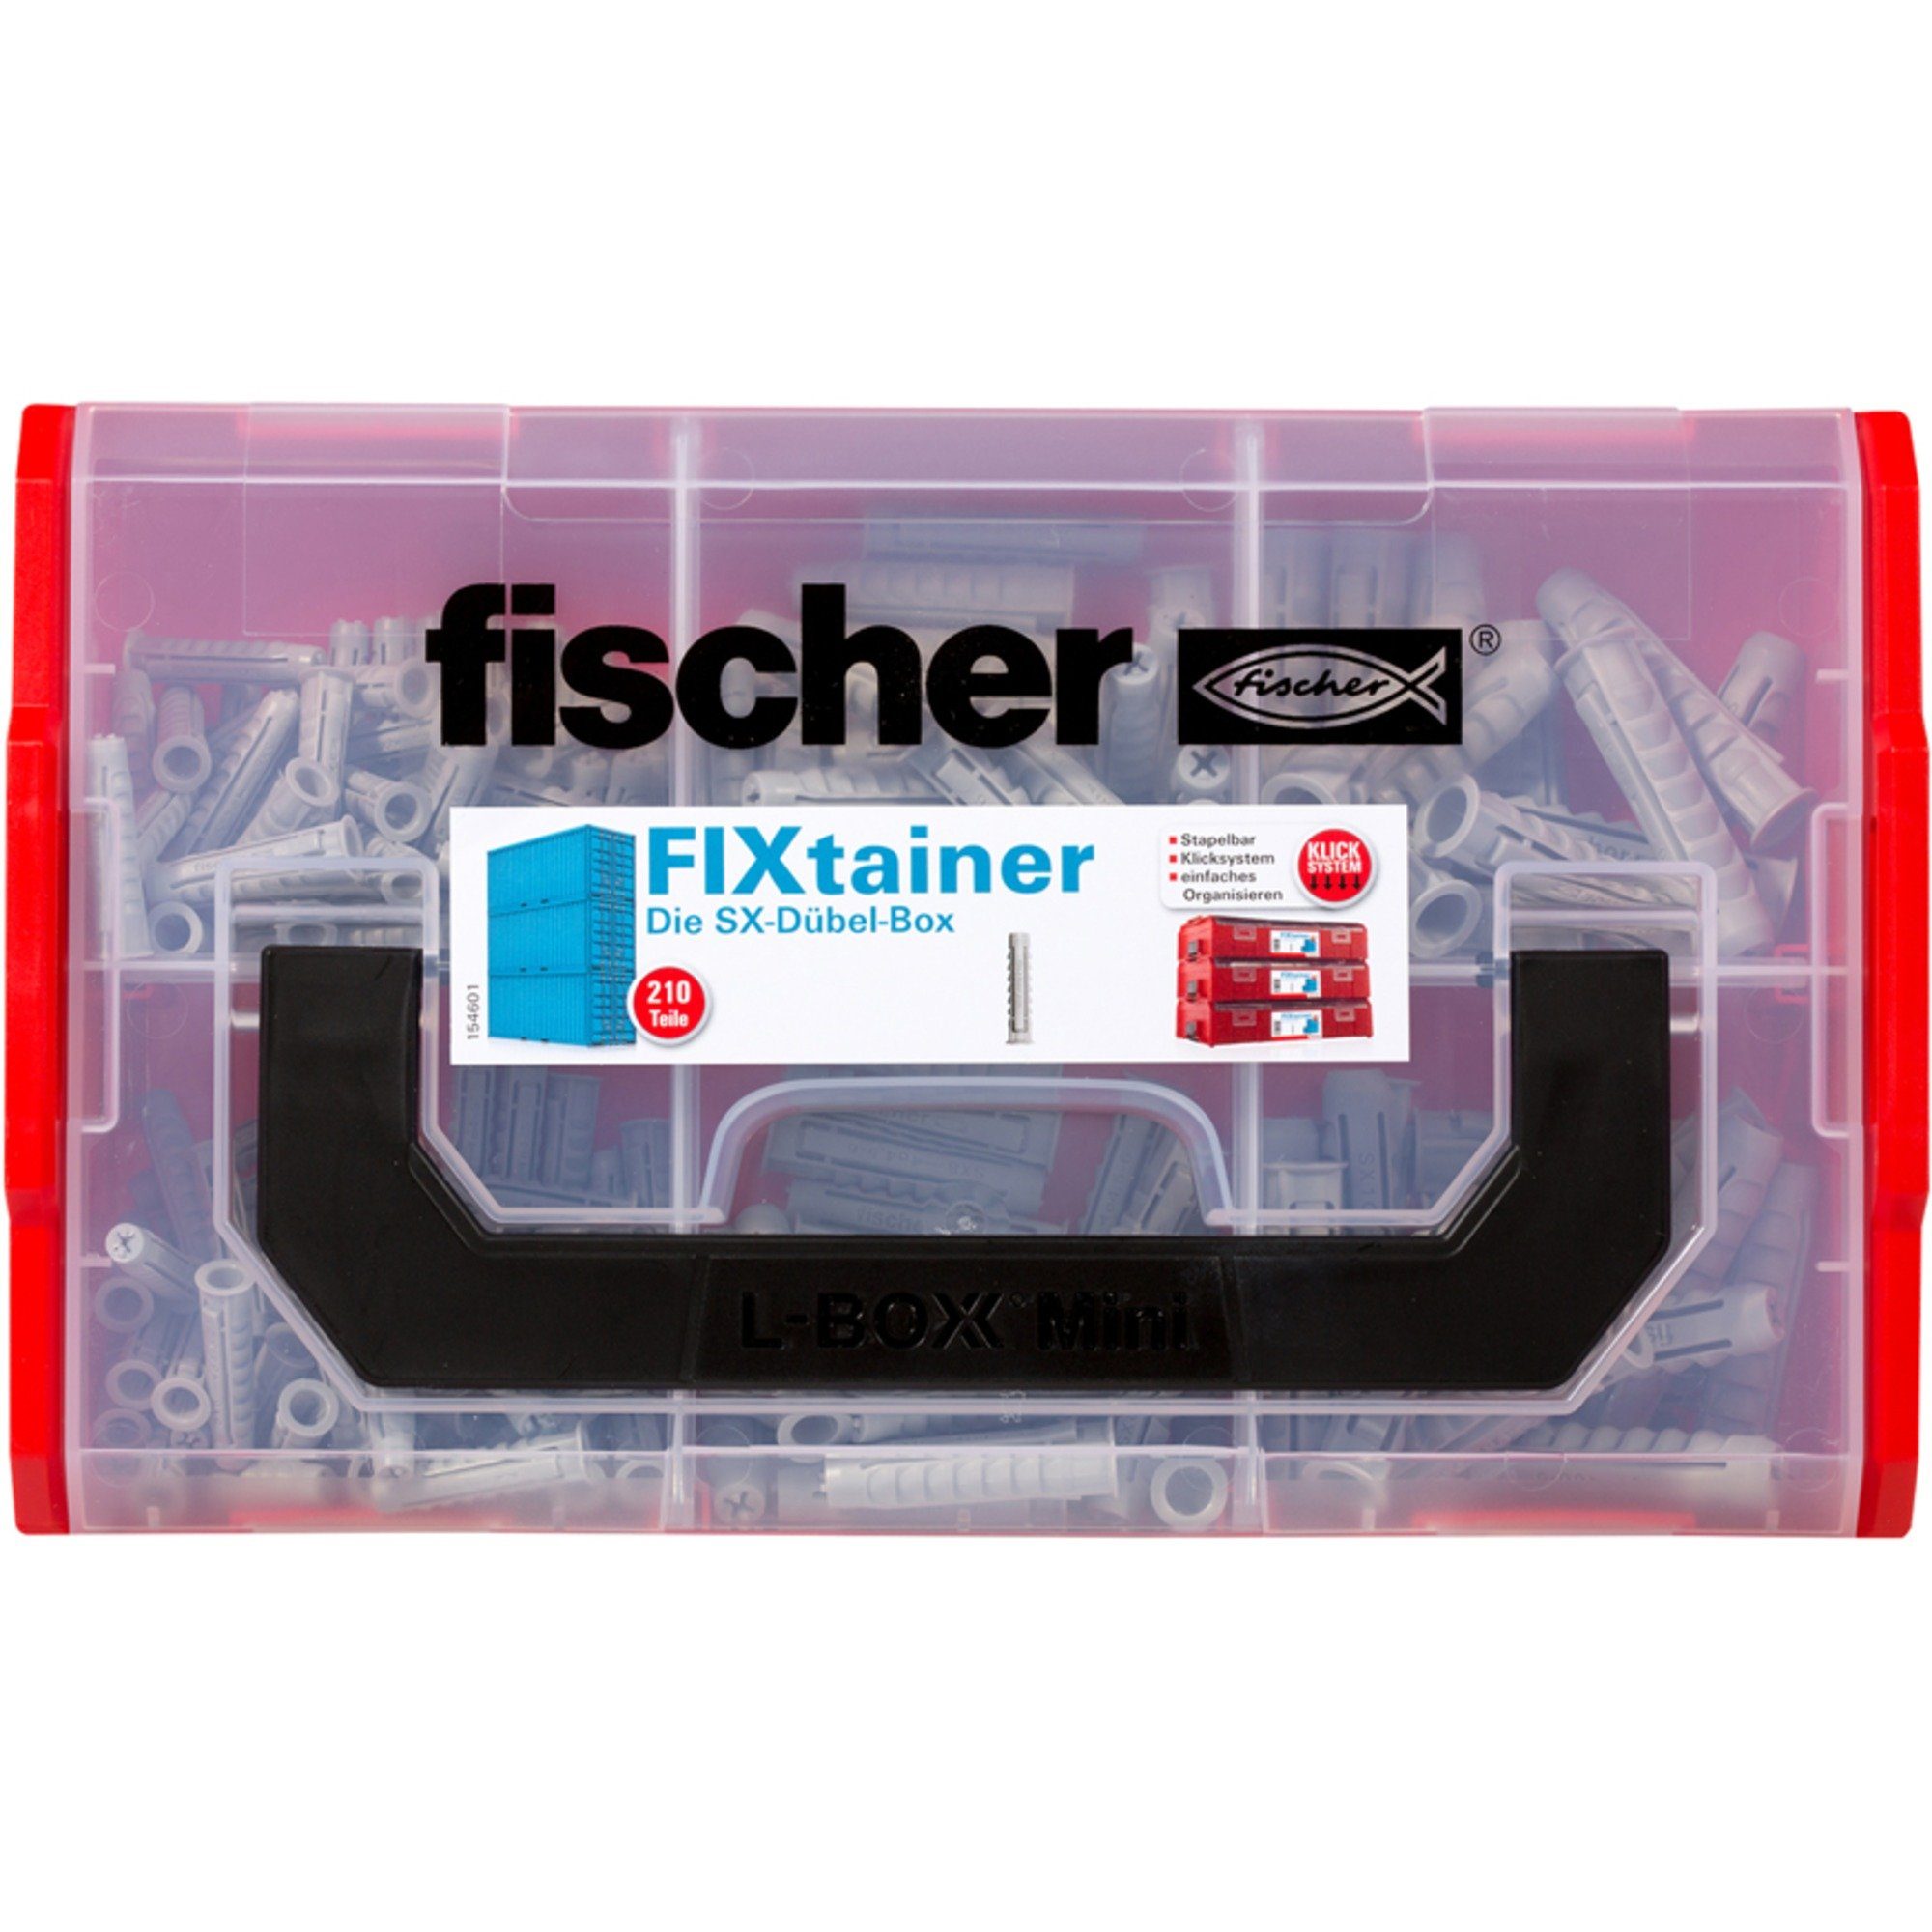 fischer - FixTainer SX-Dübel-Box, Universaldübel (210-teilig) Fischer